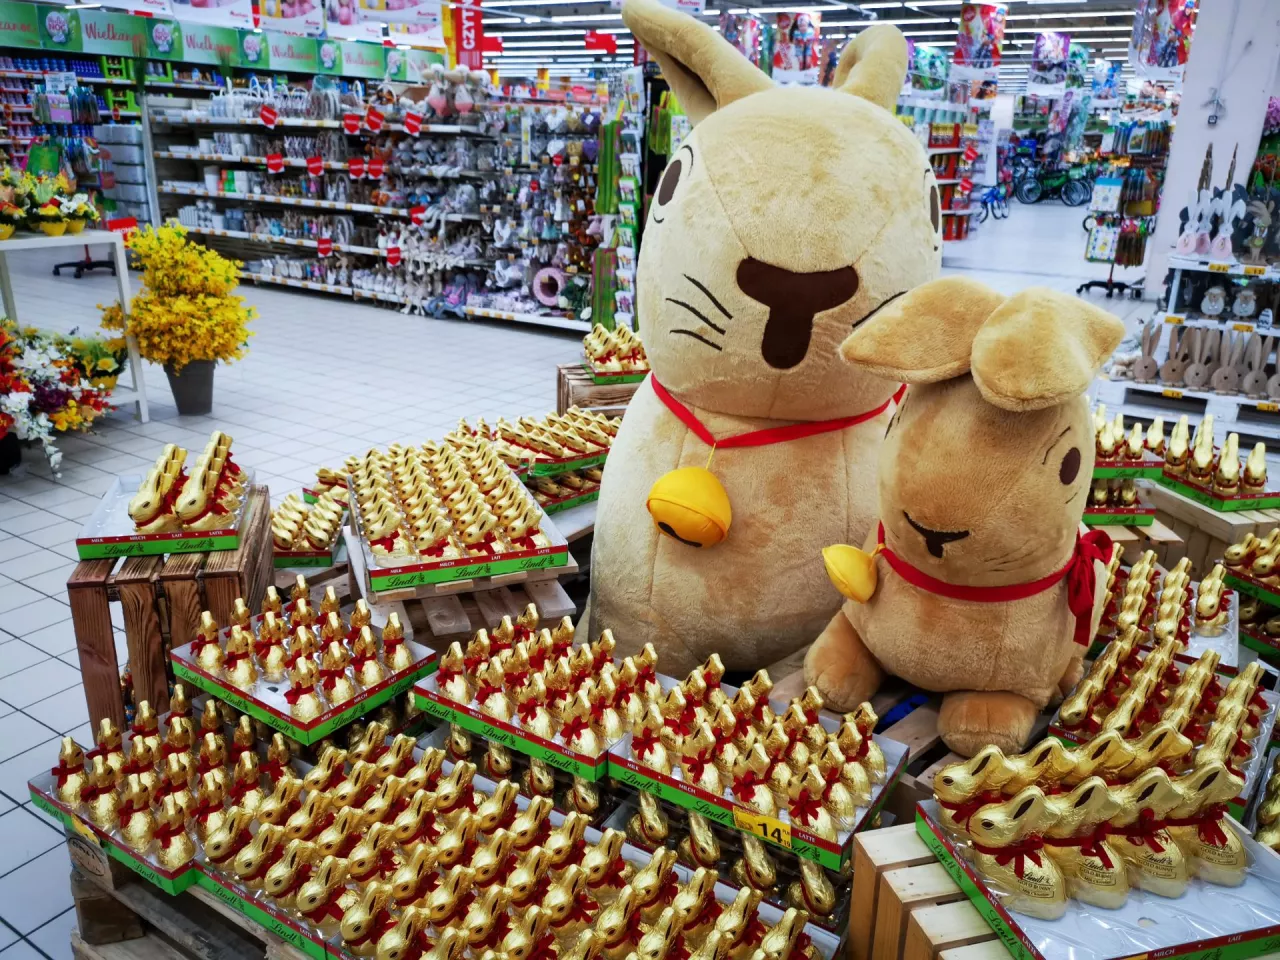 Wielkanocne zakupy Polaków (Shutterstock)